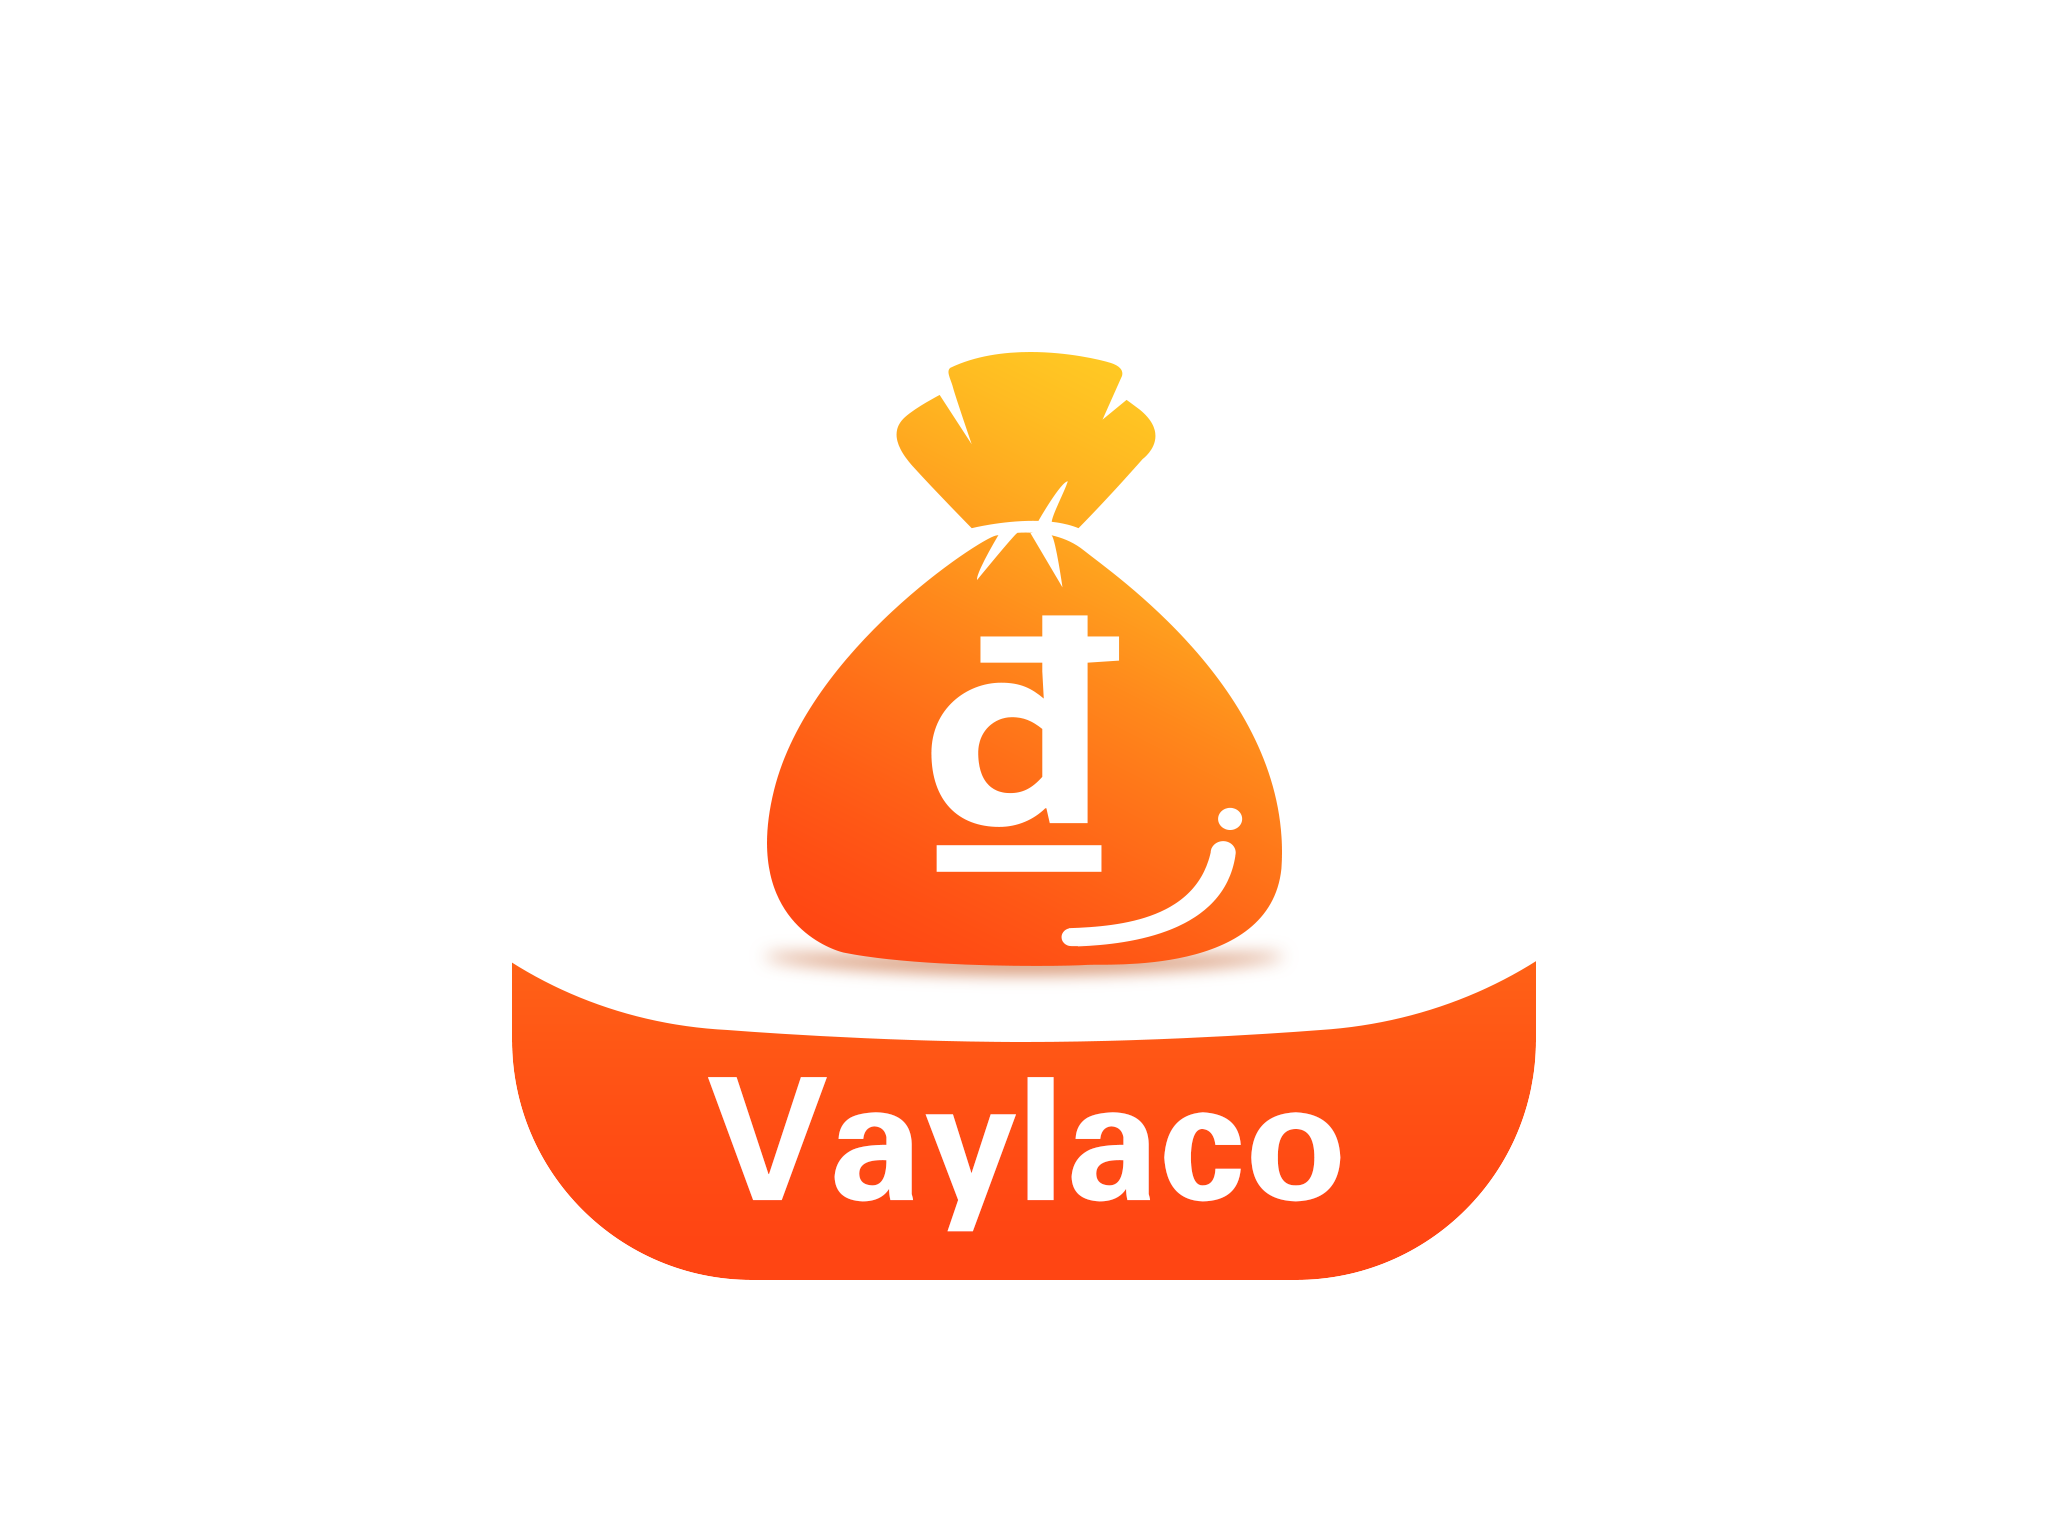 Vaylaco – Vay là có ngay chỉ sau 30 phút, hạn mức duyệt đến 10 triệu đồng